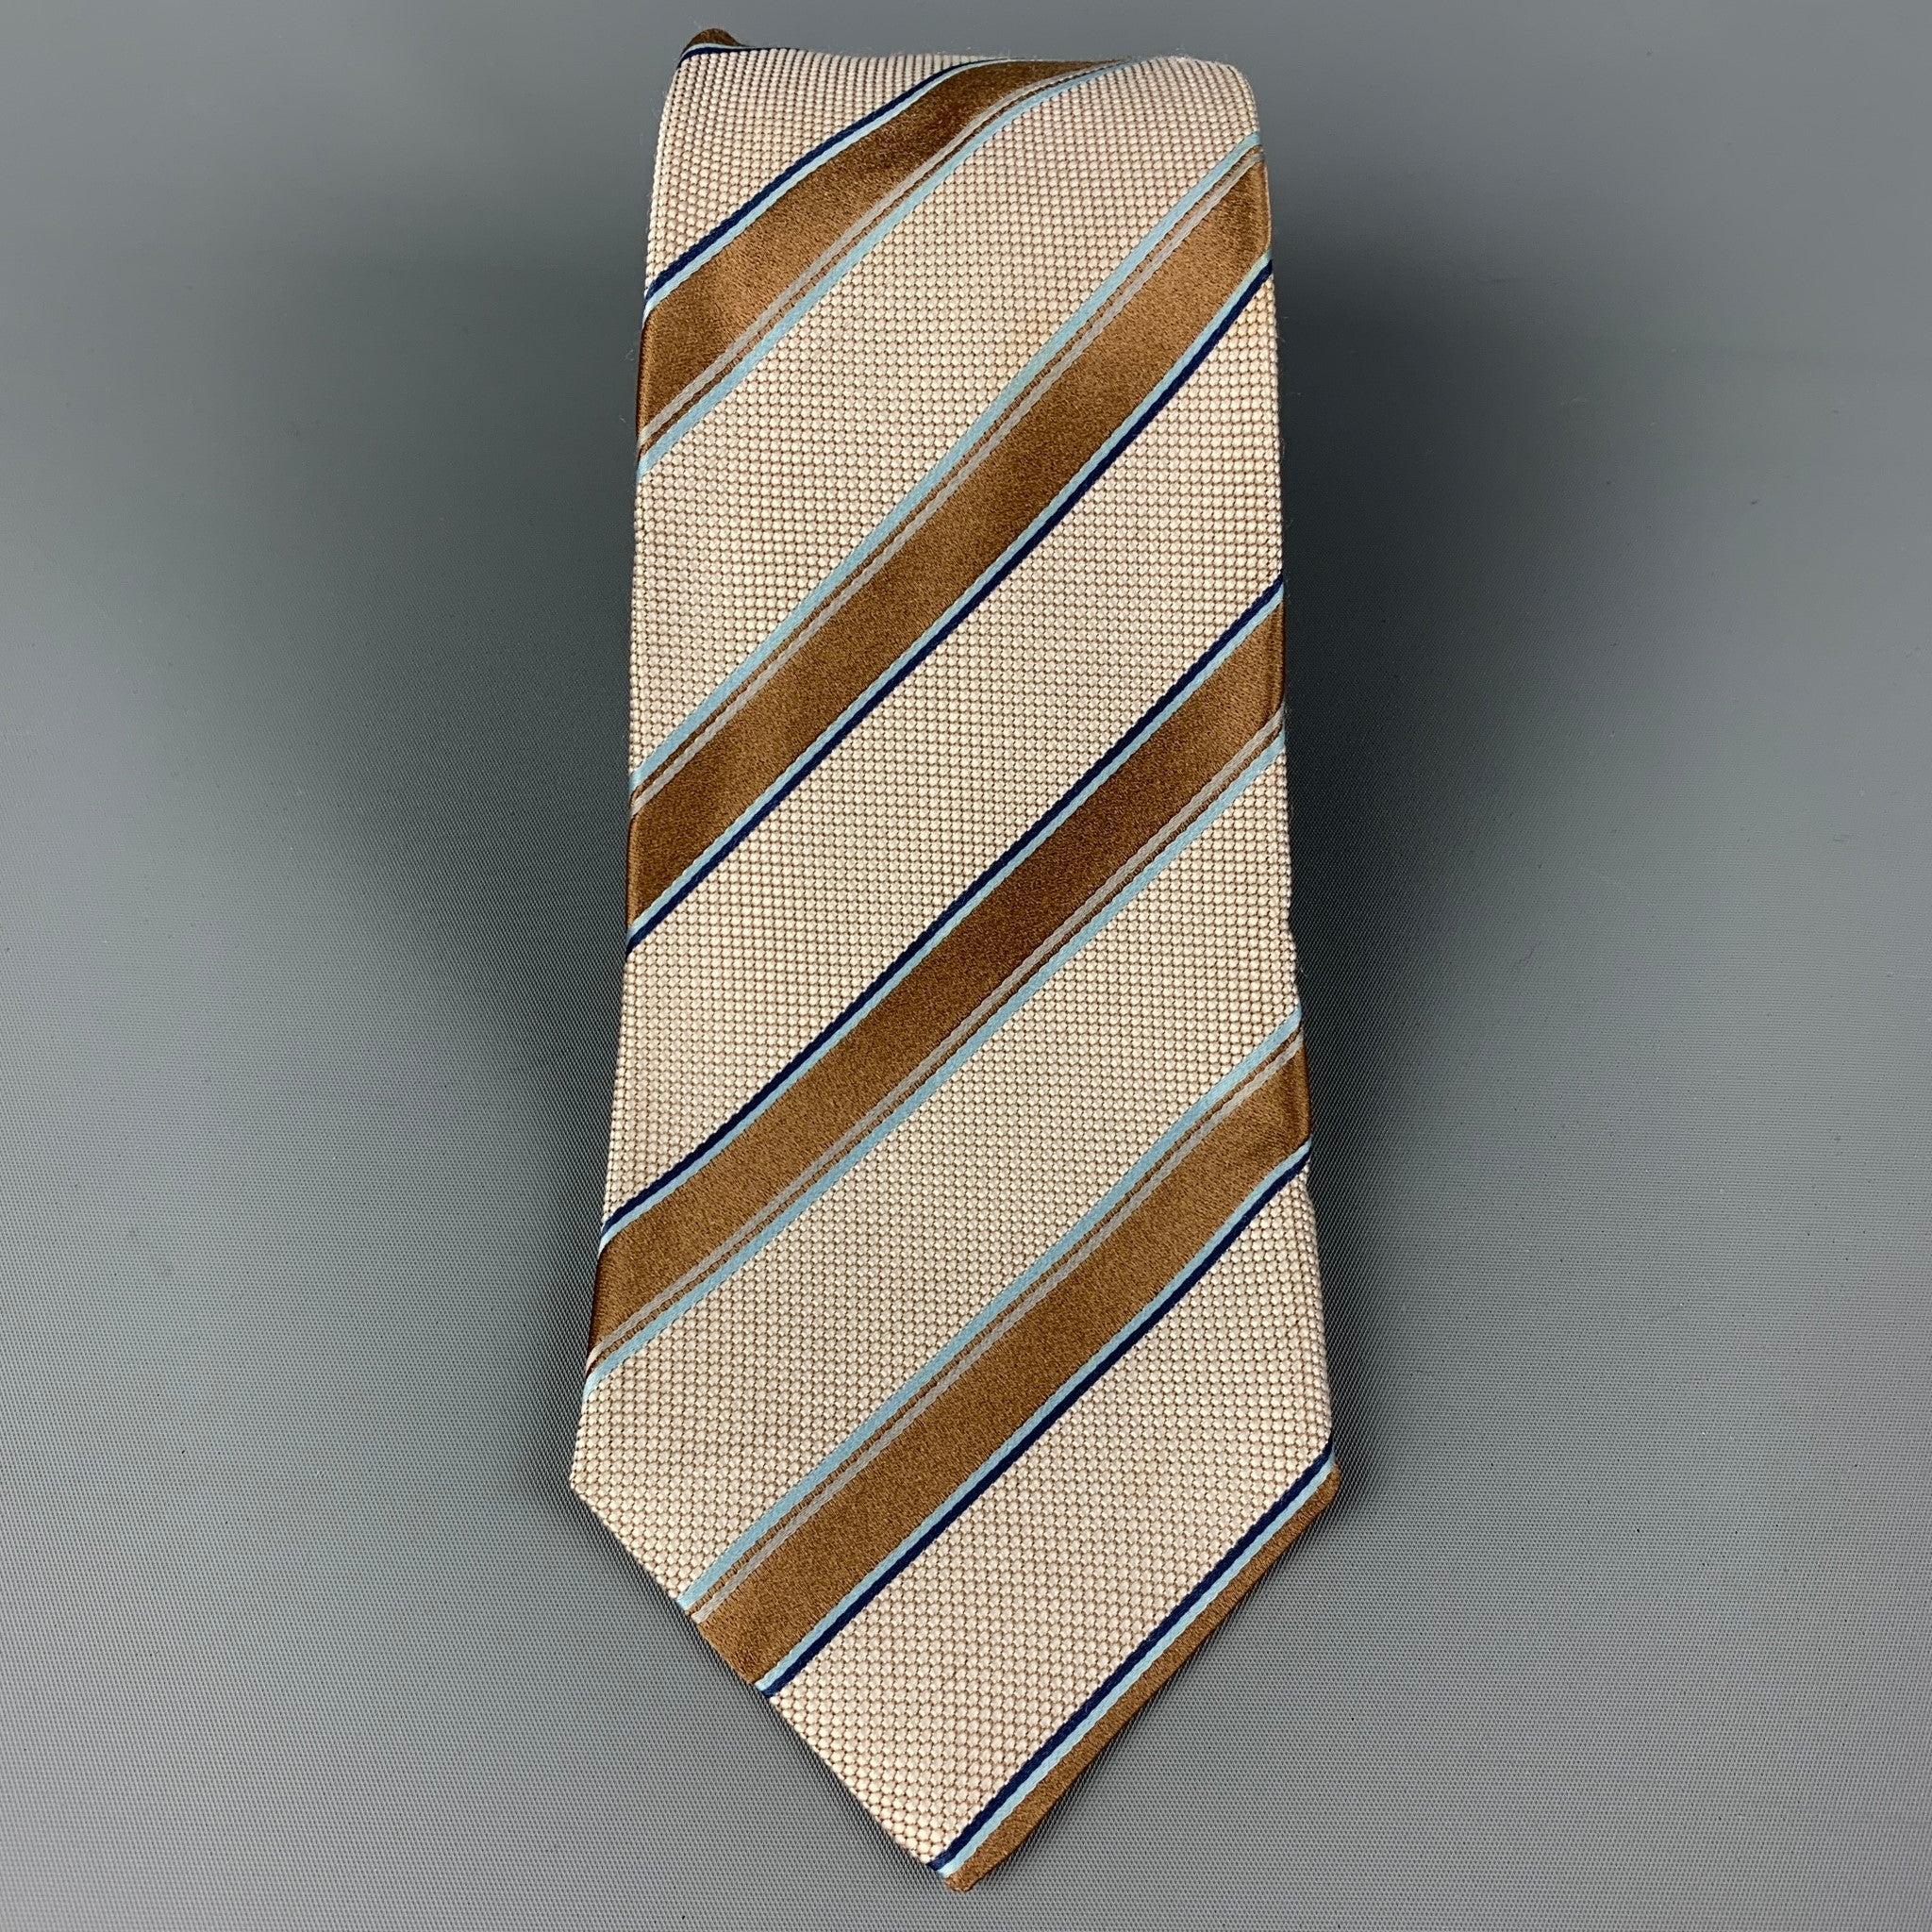 KITON Krawatte aus hellbrauner und weißer Seide mit diagonalem Streifendruck. Hergestellt in Italien. Sehr guter, gebrauchter Zustand, Breite: 3.75 Zoll  Länge: 61 Zoll 


  
  
 
Sui Generis-Referenz: 120374
Kategorie: Krawatte
Mehr Details
   